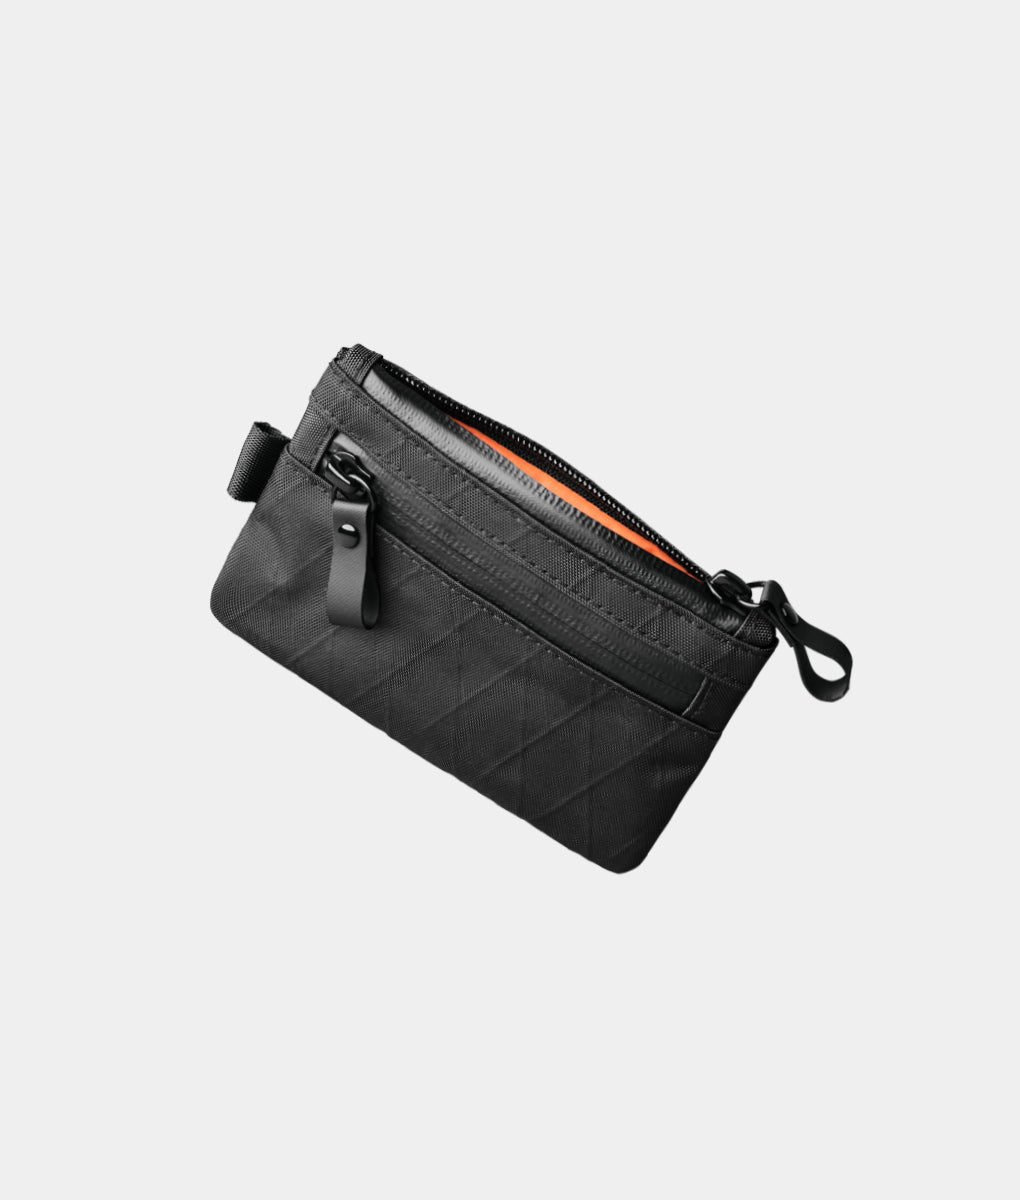 Medium Zipper Bag - 8.5 x 5